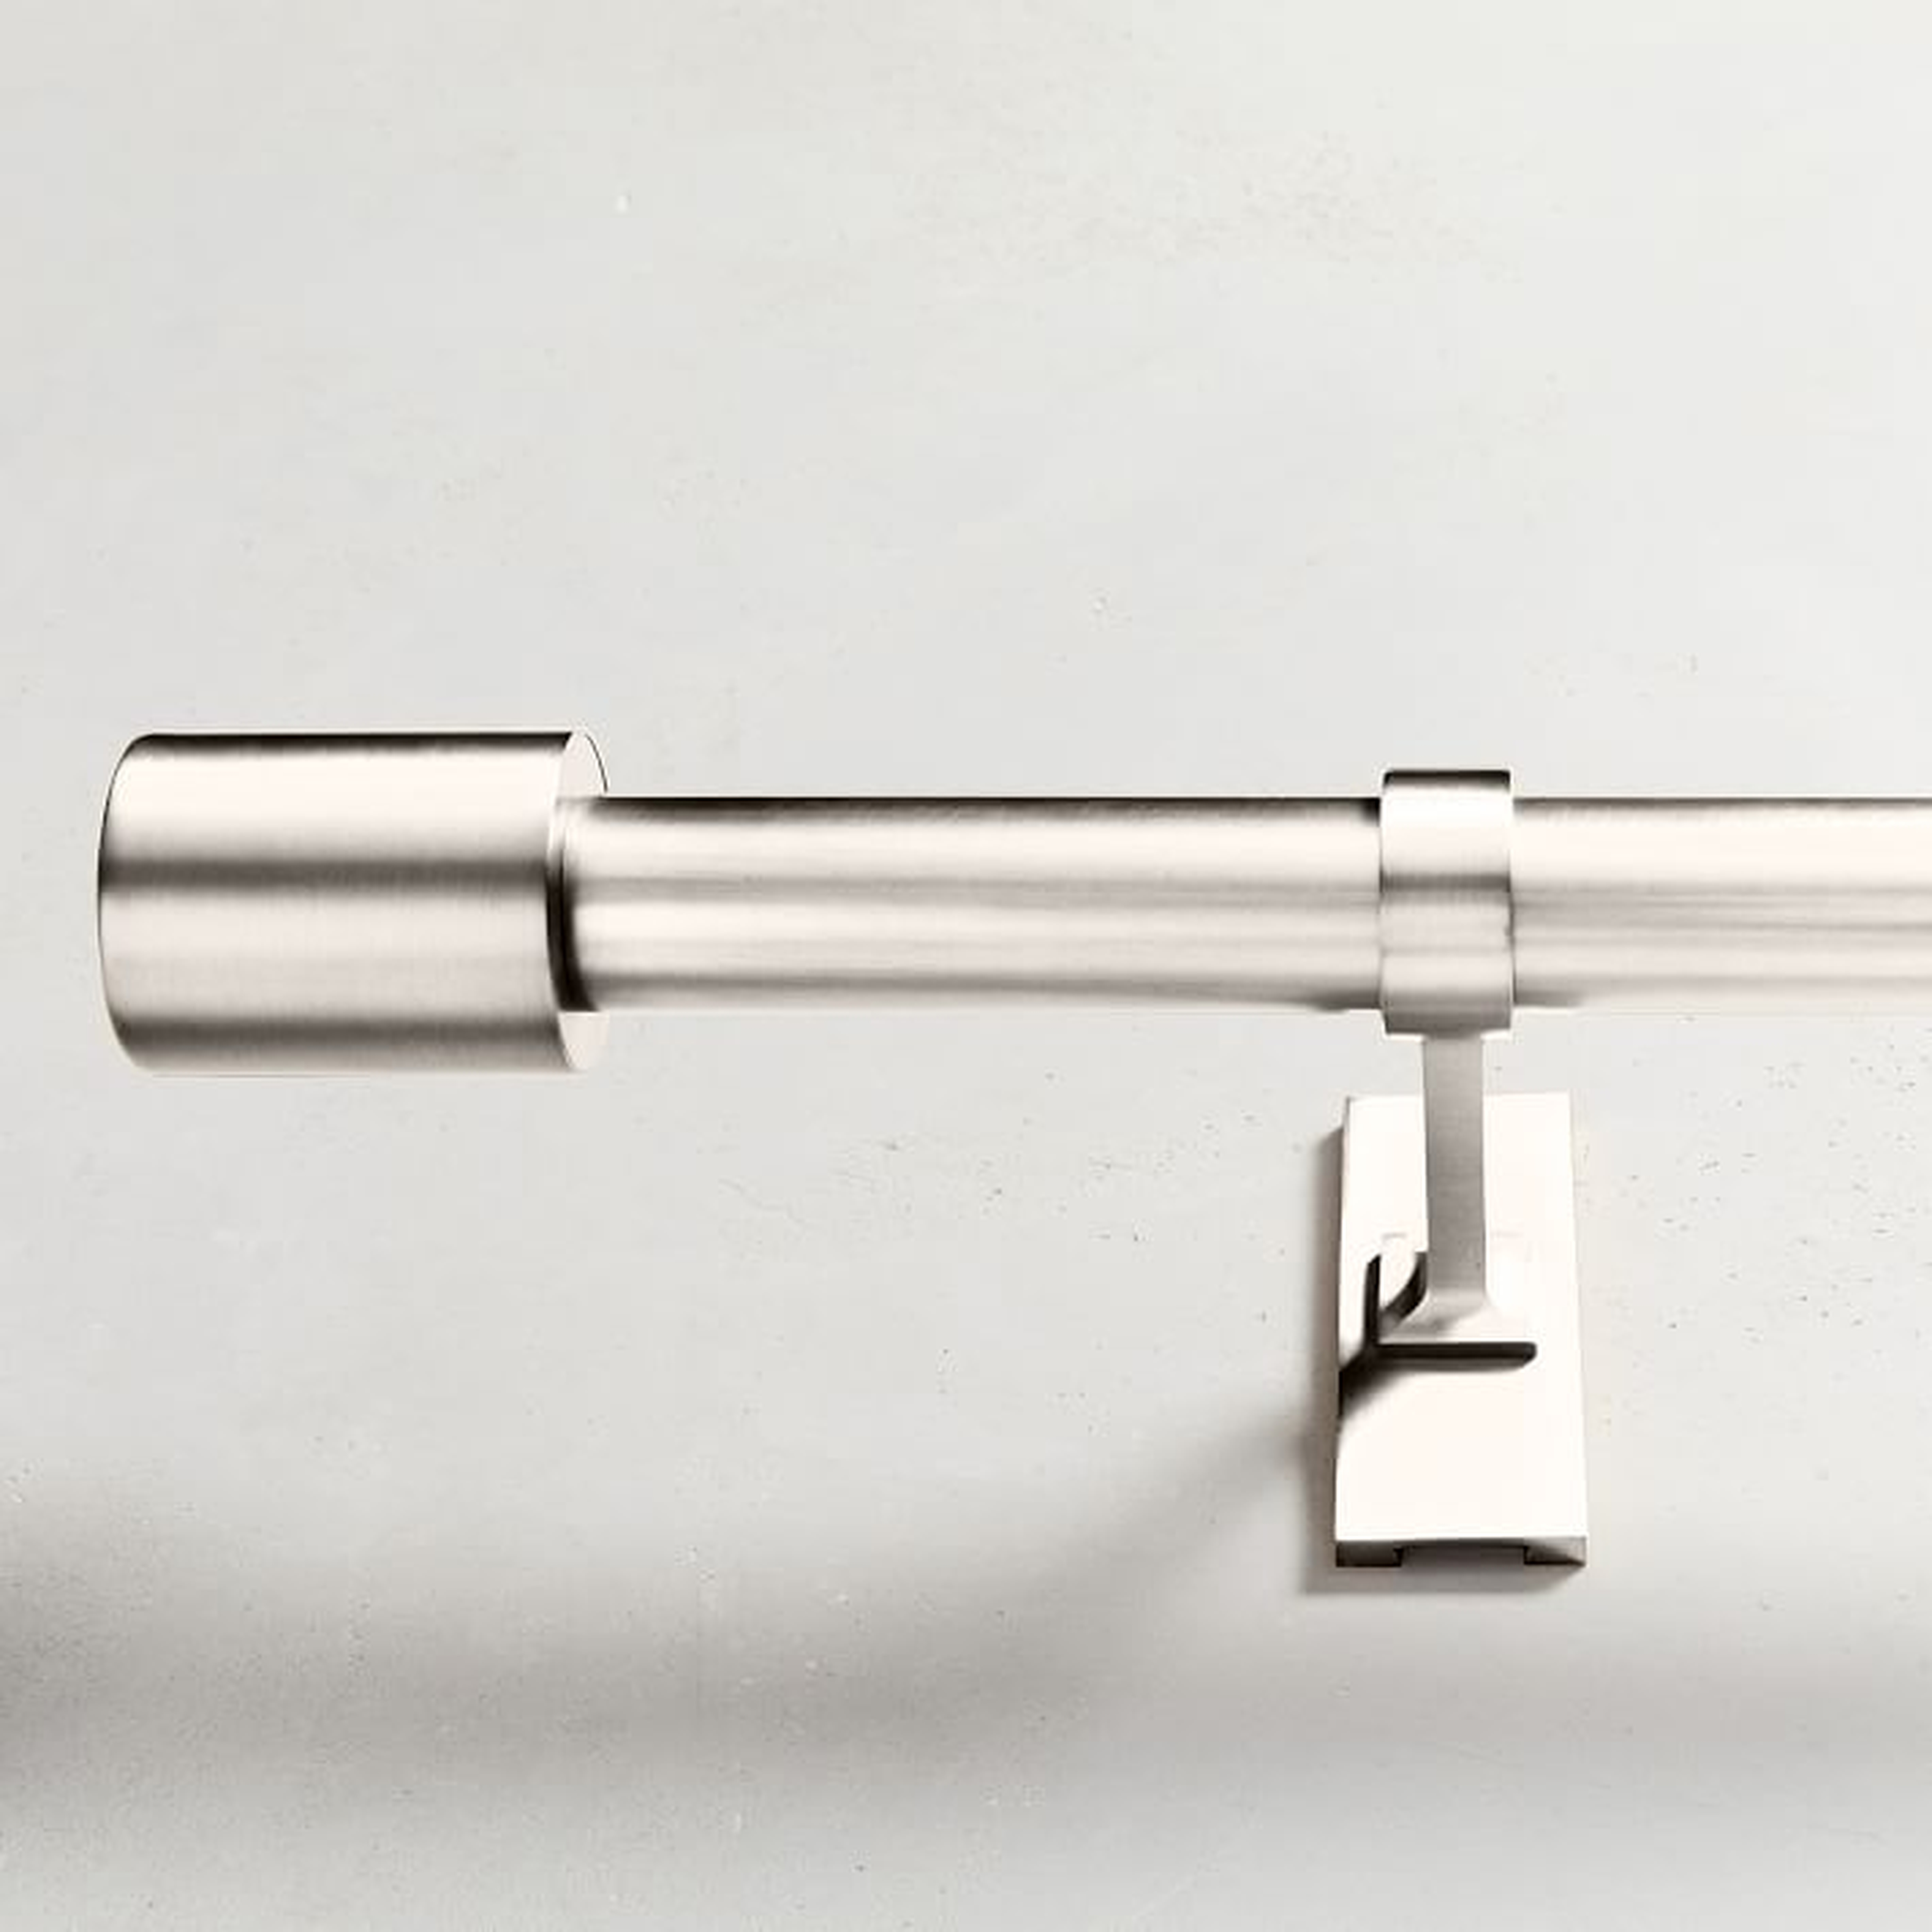 Oversized Adjustable Metal Rod - Polished Nickel, 48" - 88" - West Elm